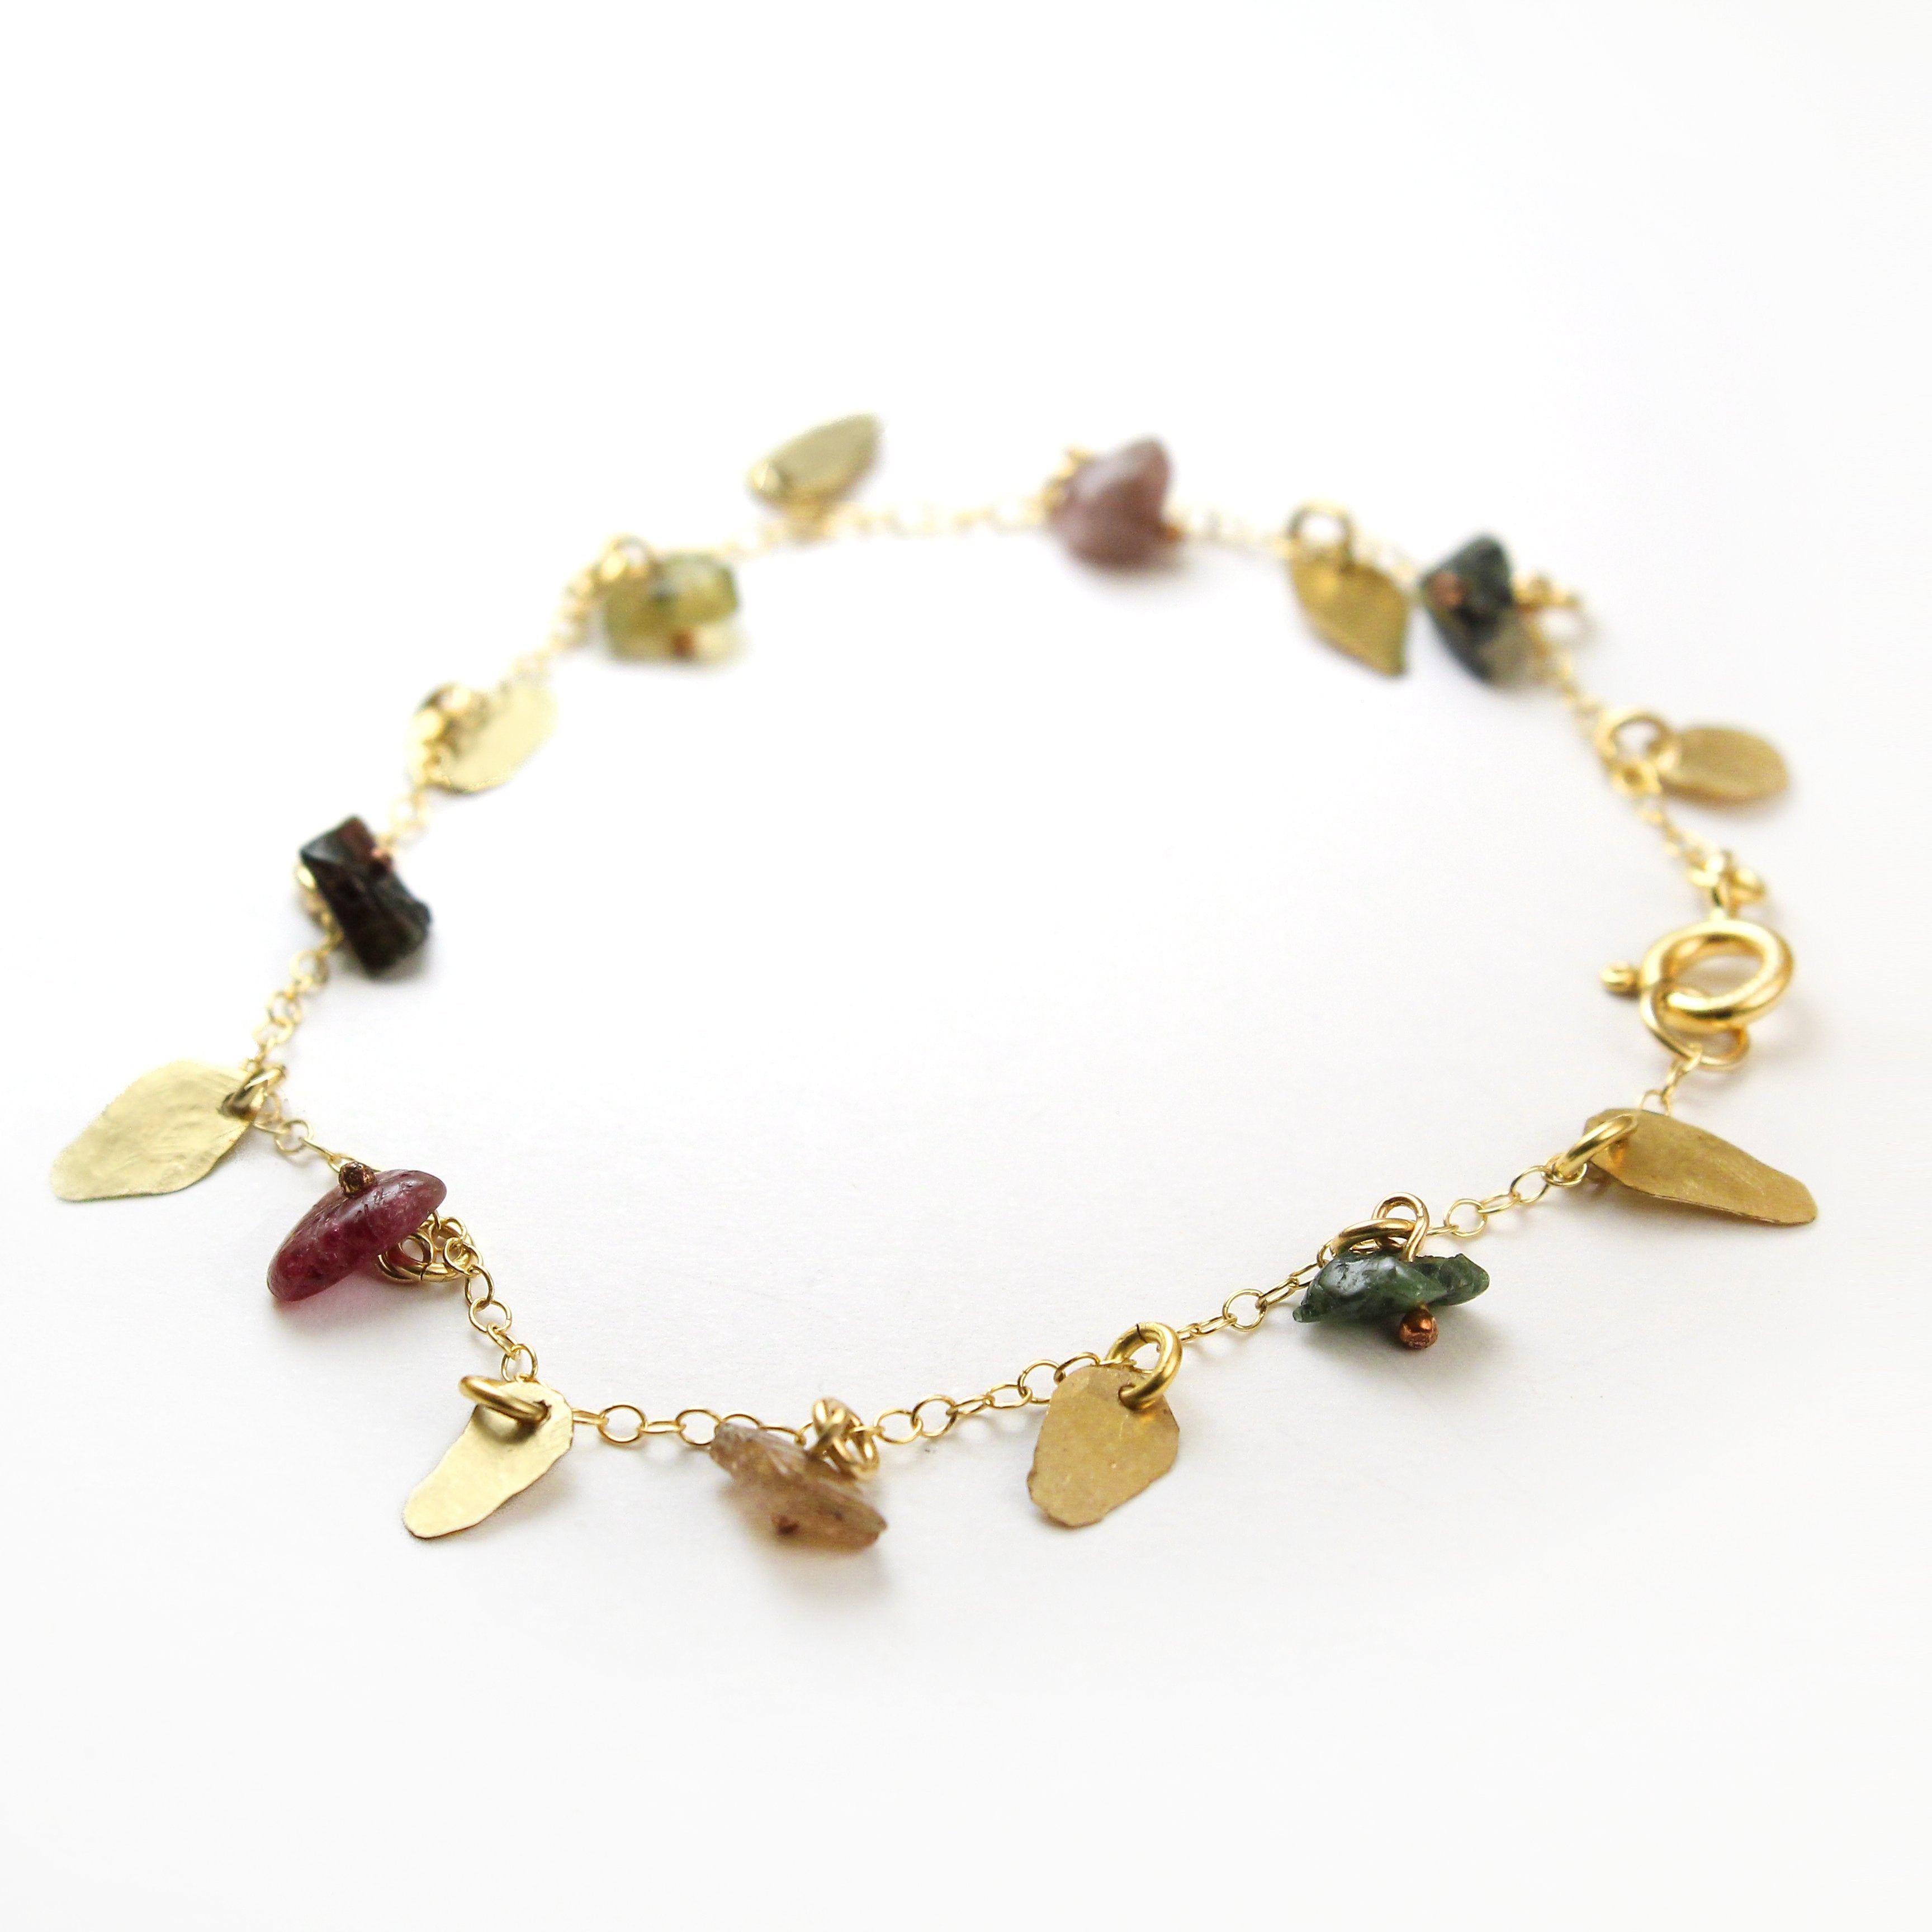 Gold filled Leaves & Tourmaline Gemstones Elegant Bracelet - Shulamit Kanter